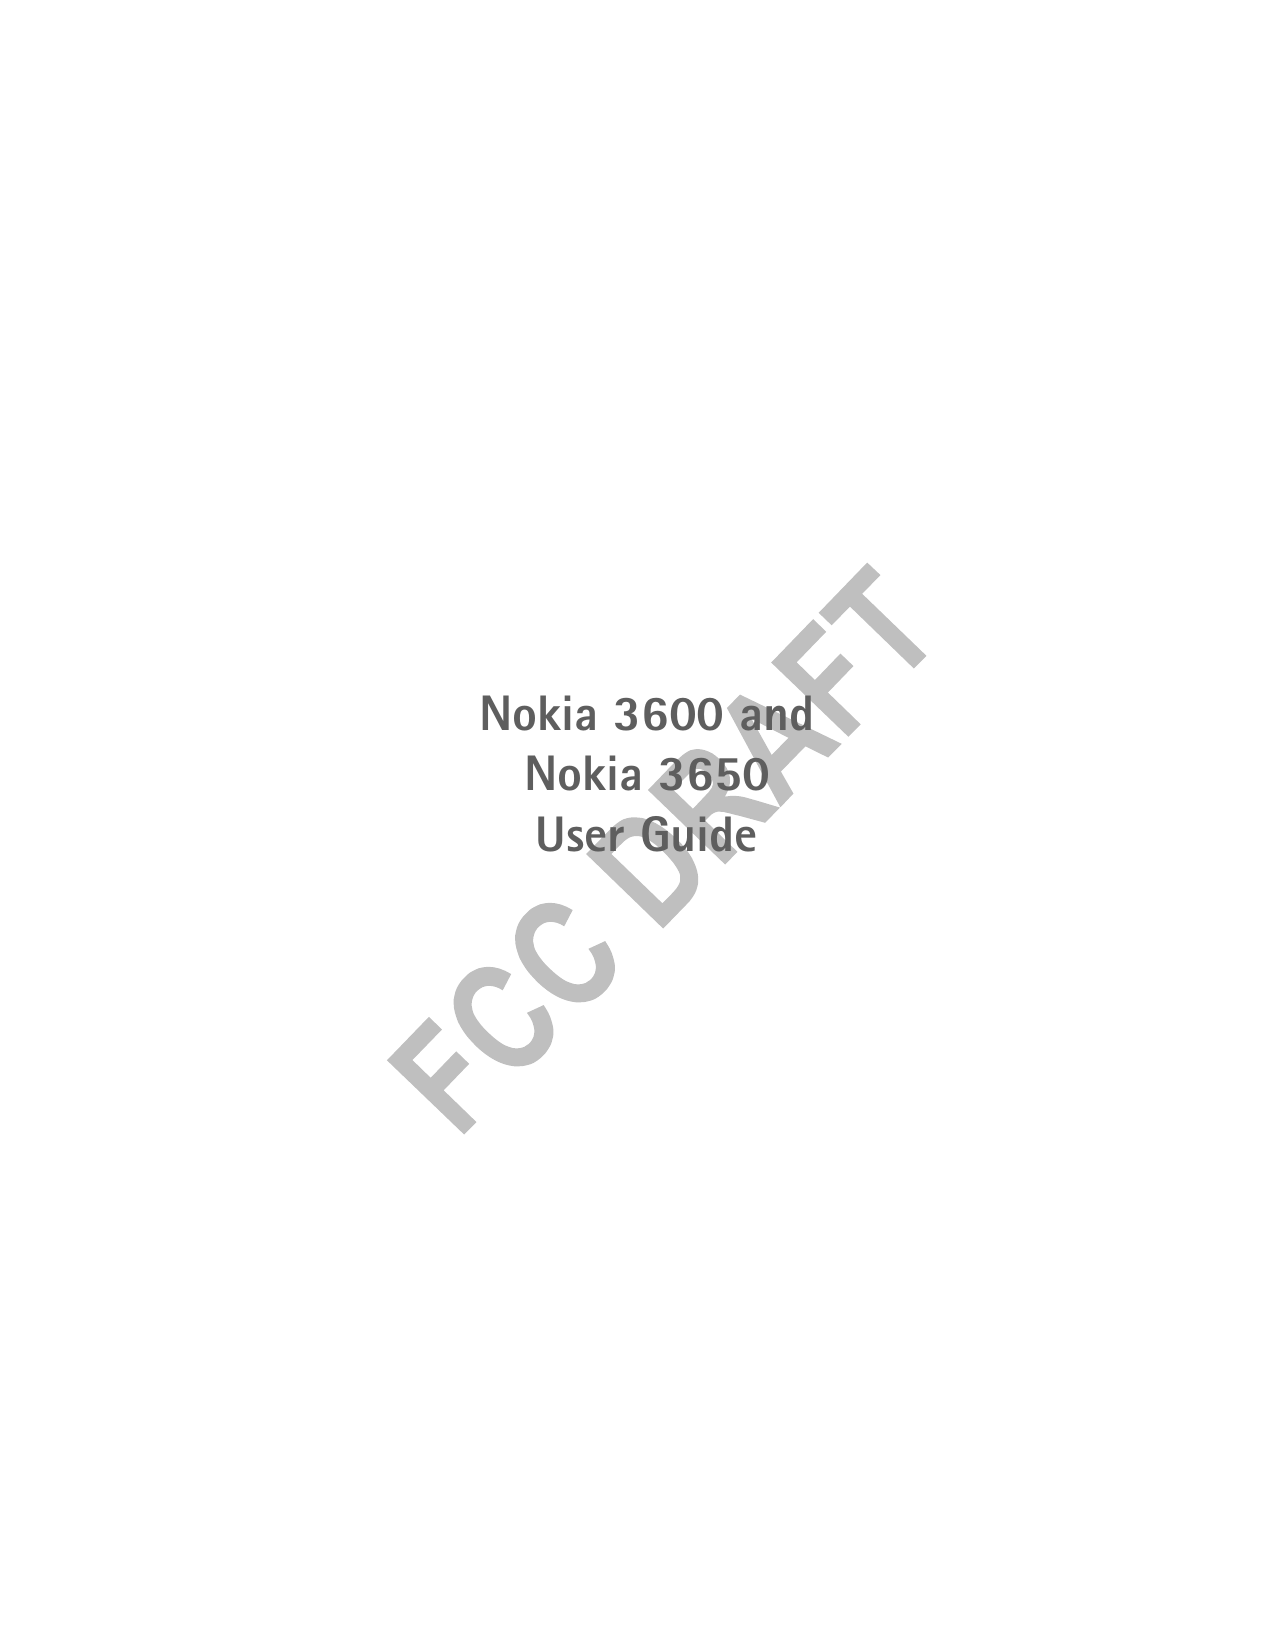 Nokia 3600 and Nokia 3650 User Guide